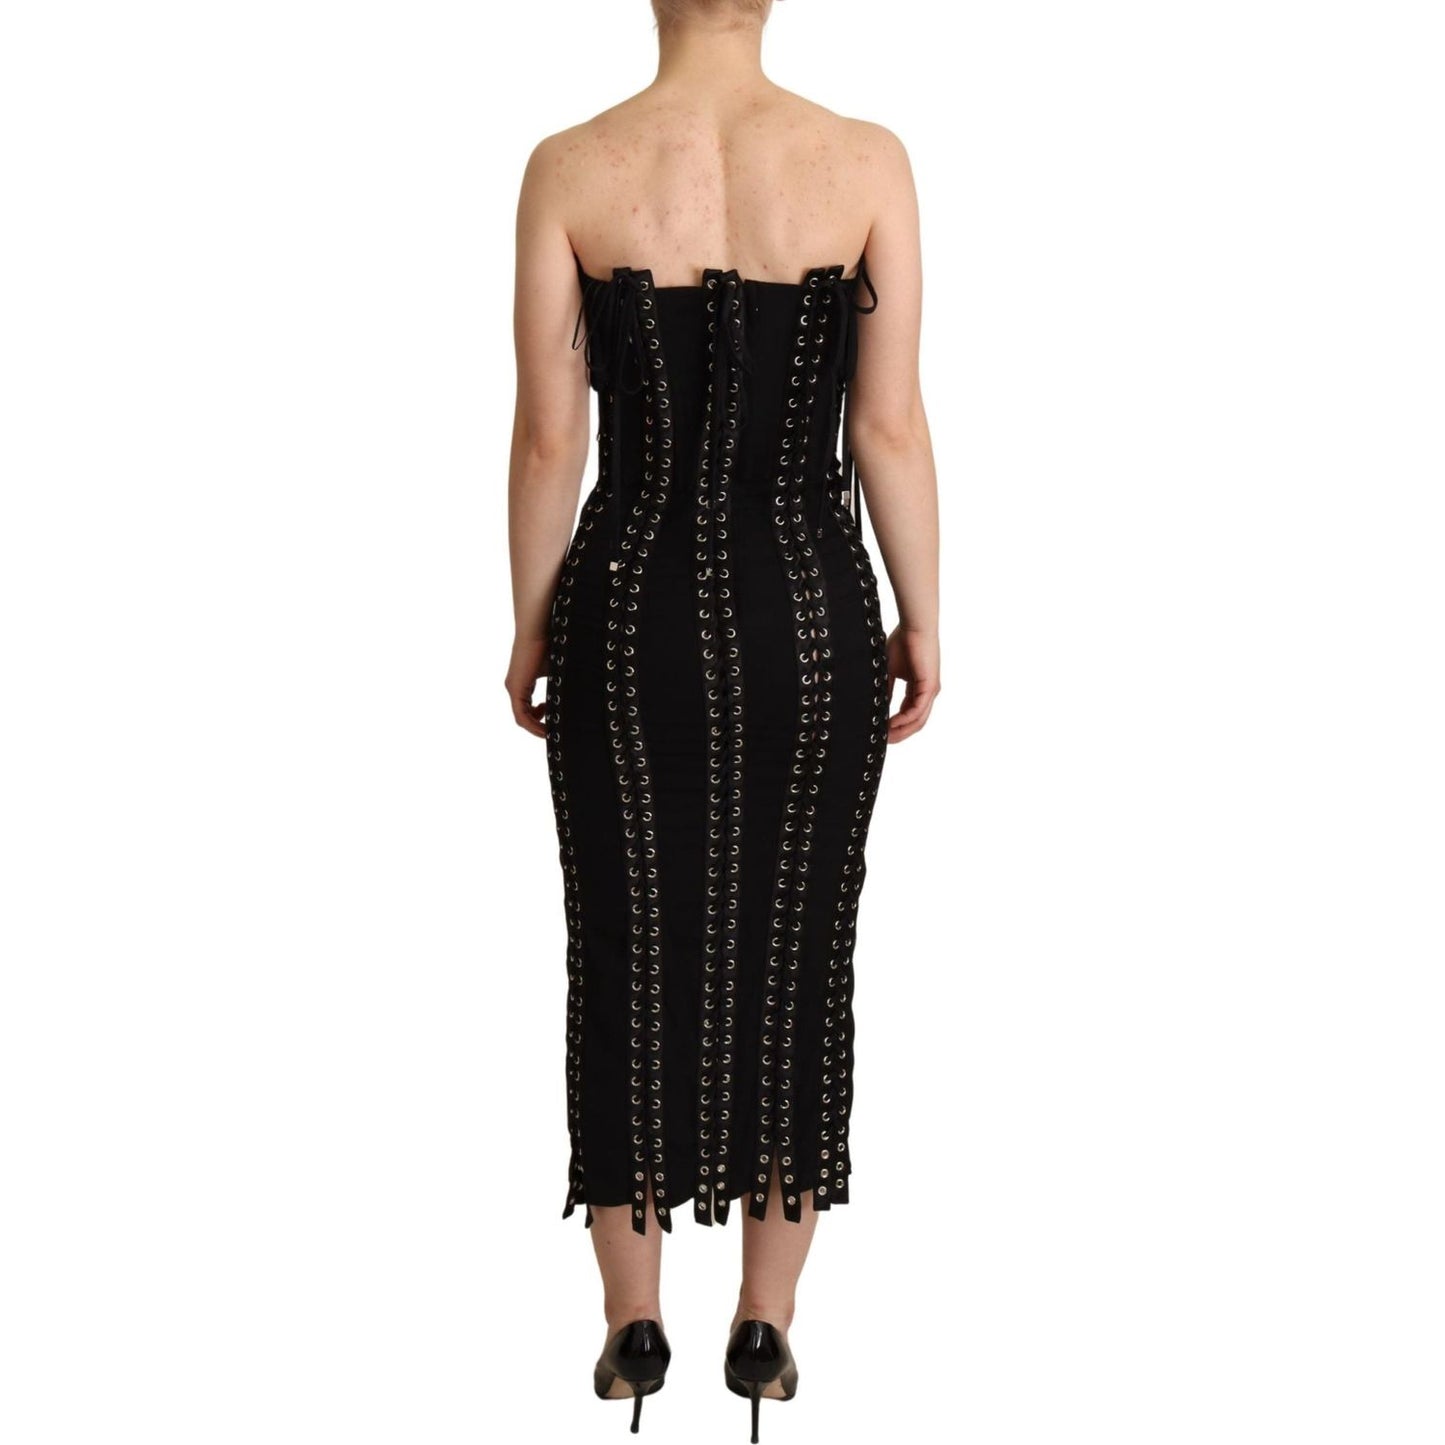 Dolce & Gabbana Elegant Sleeveless Lace-Up Midi Dress black-cady-sleeveless-lace-up-bodycon-dress